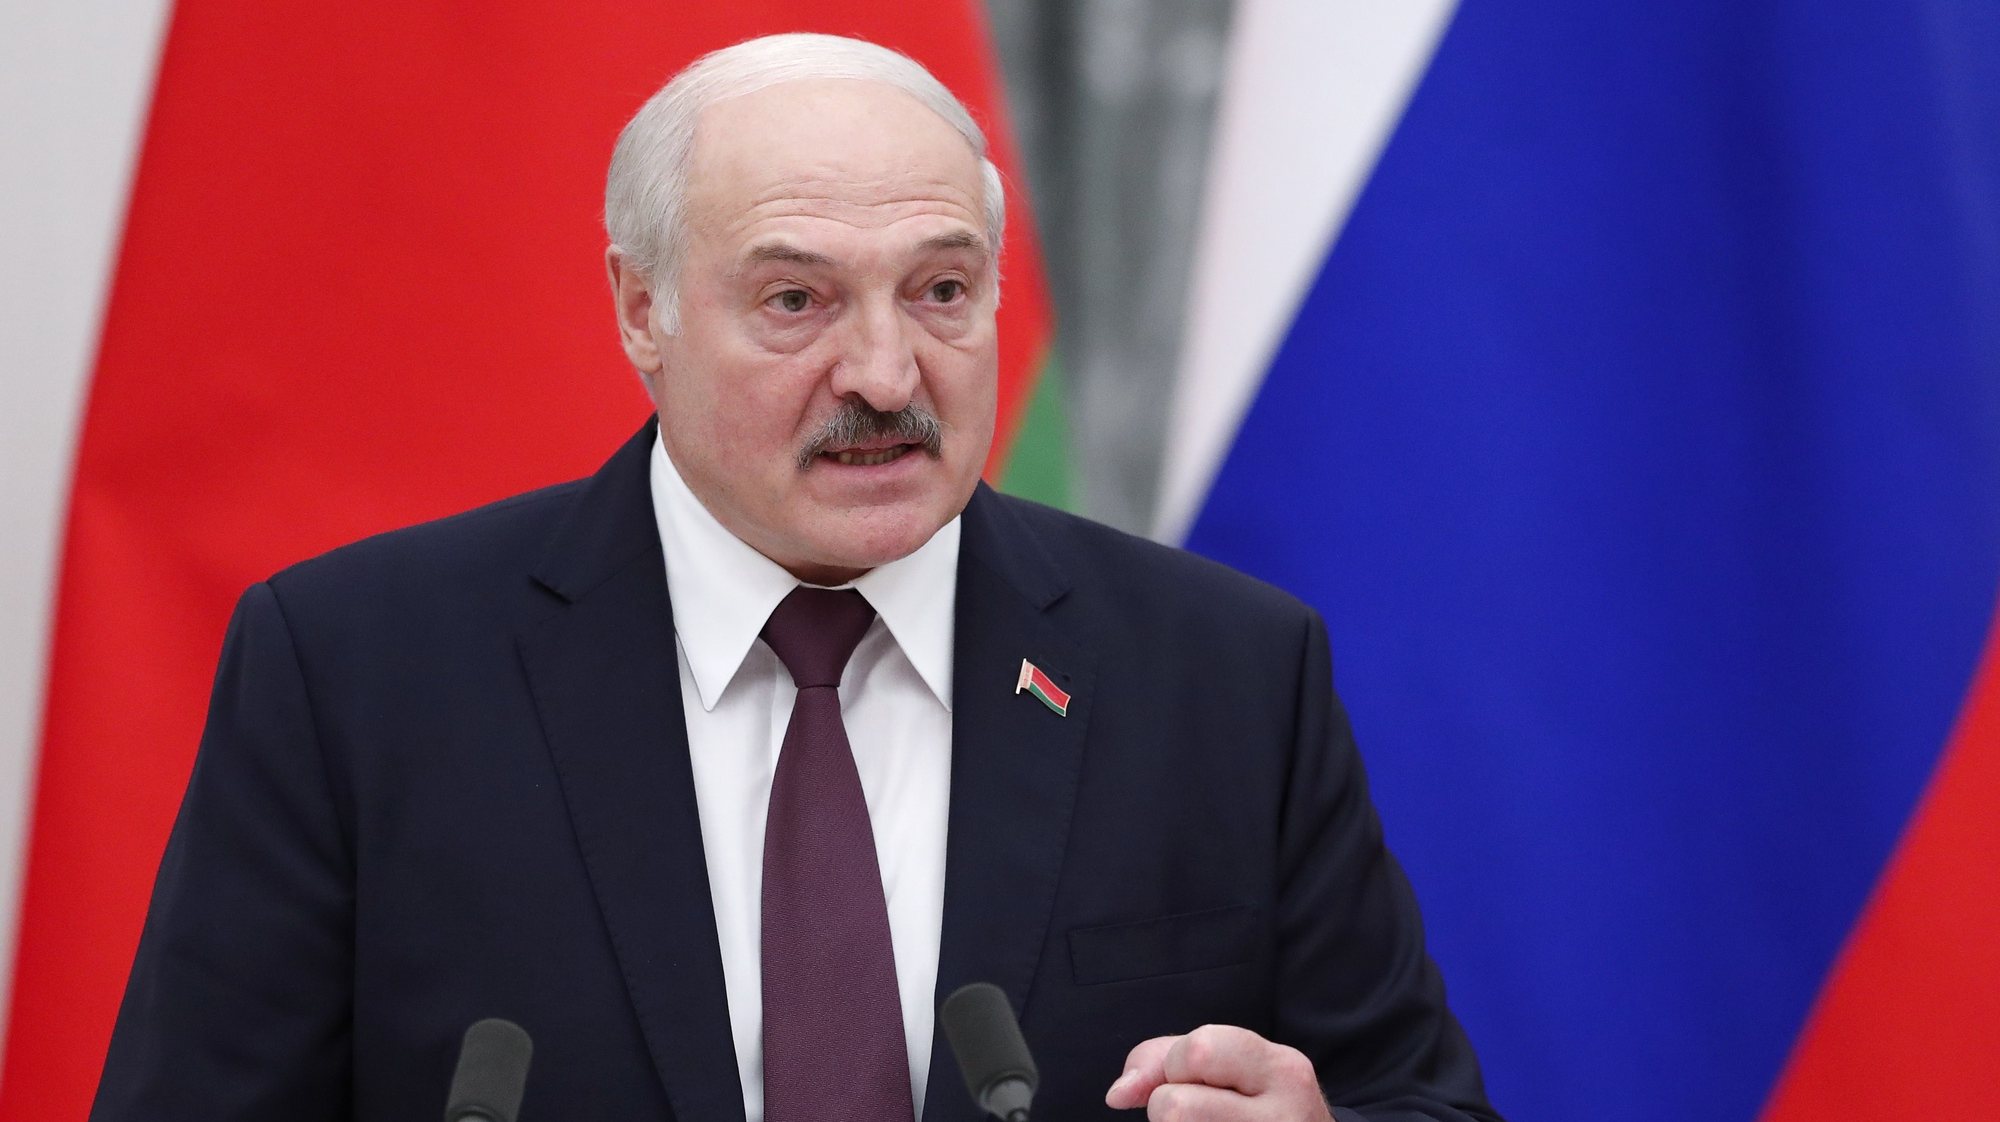 Presidente bielorrusso Alexander Lukashenko